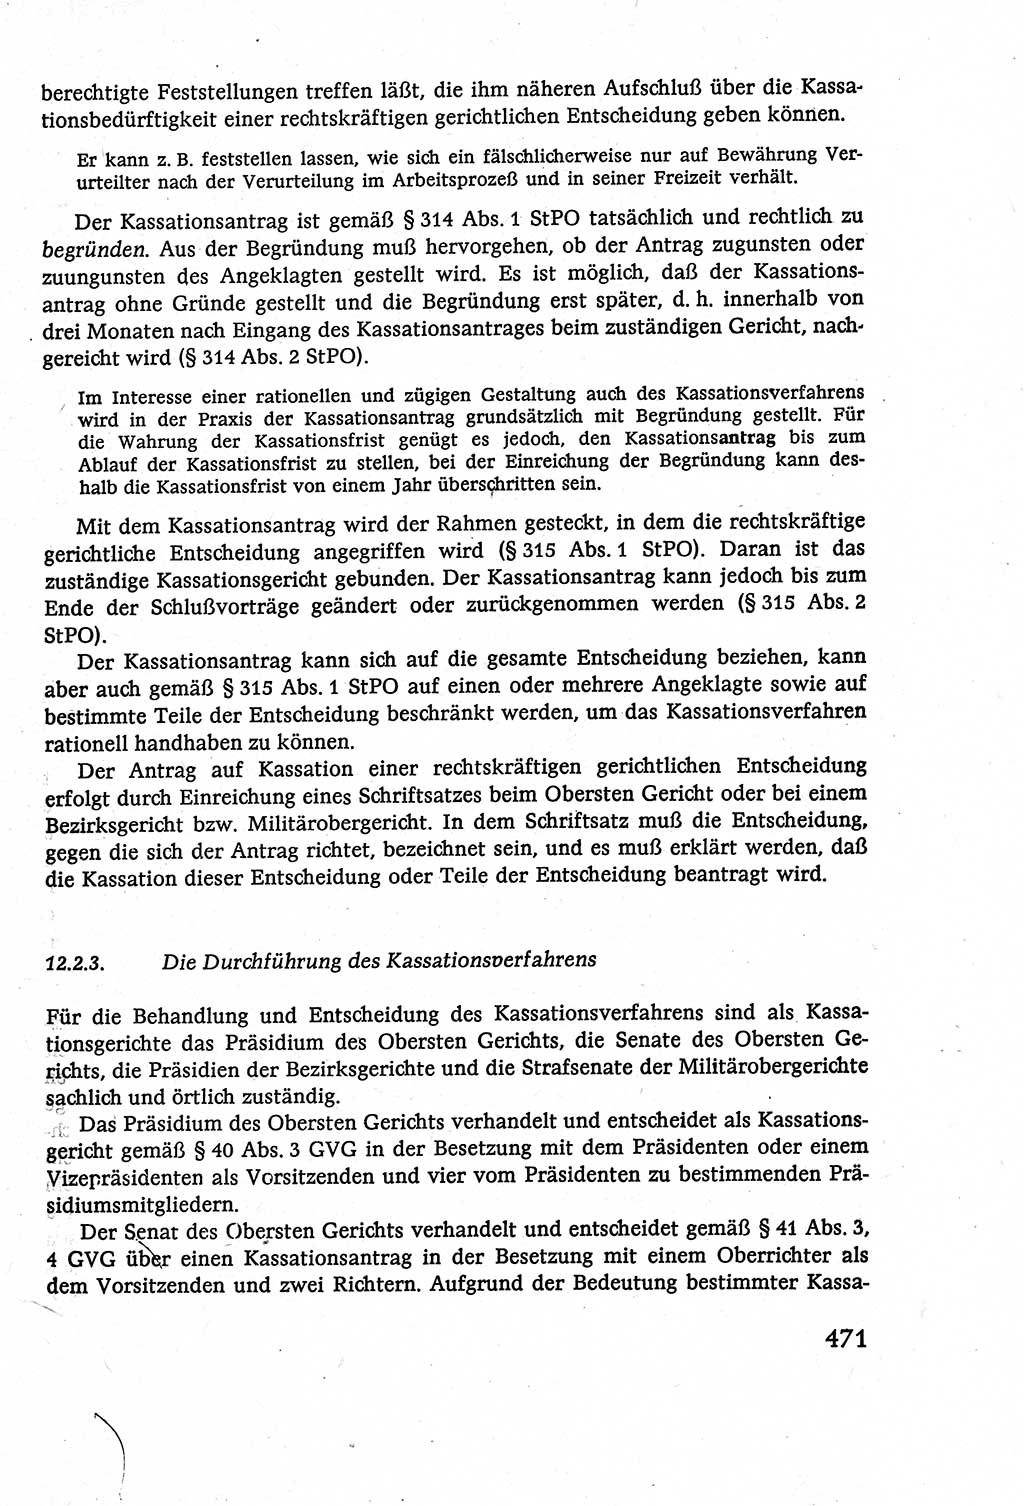 Strafverfahrensrecht [Deutsche Demokratische Republik (DDR)], Lehrbuch 1977, Seite 471 (Strafverf.-R. DDR Lb. 1977, S. 471)